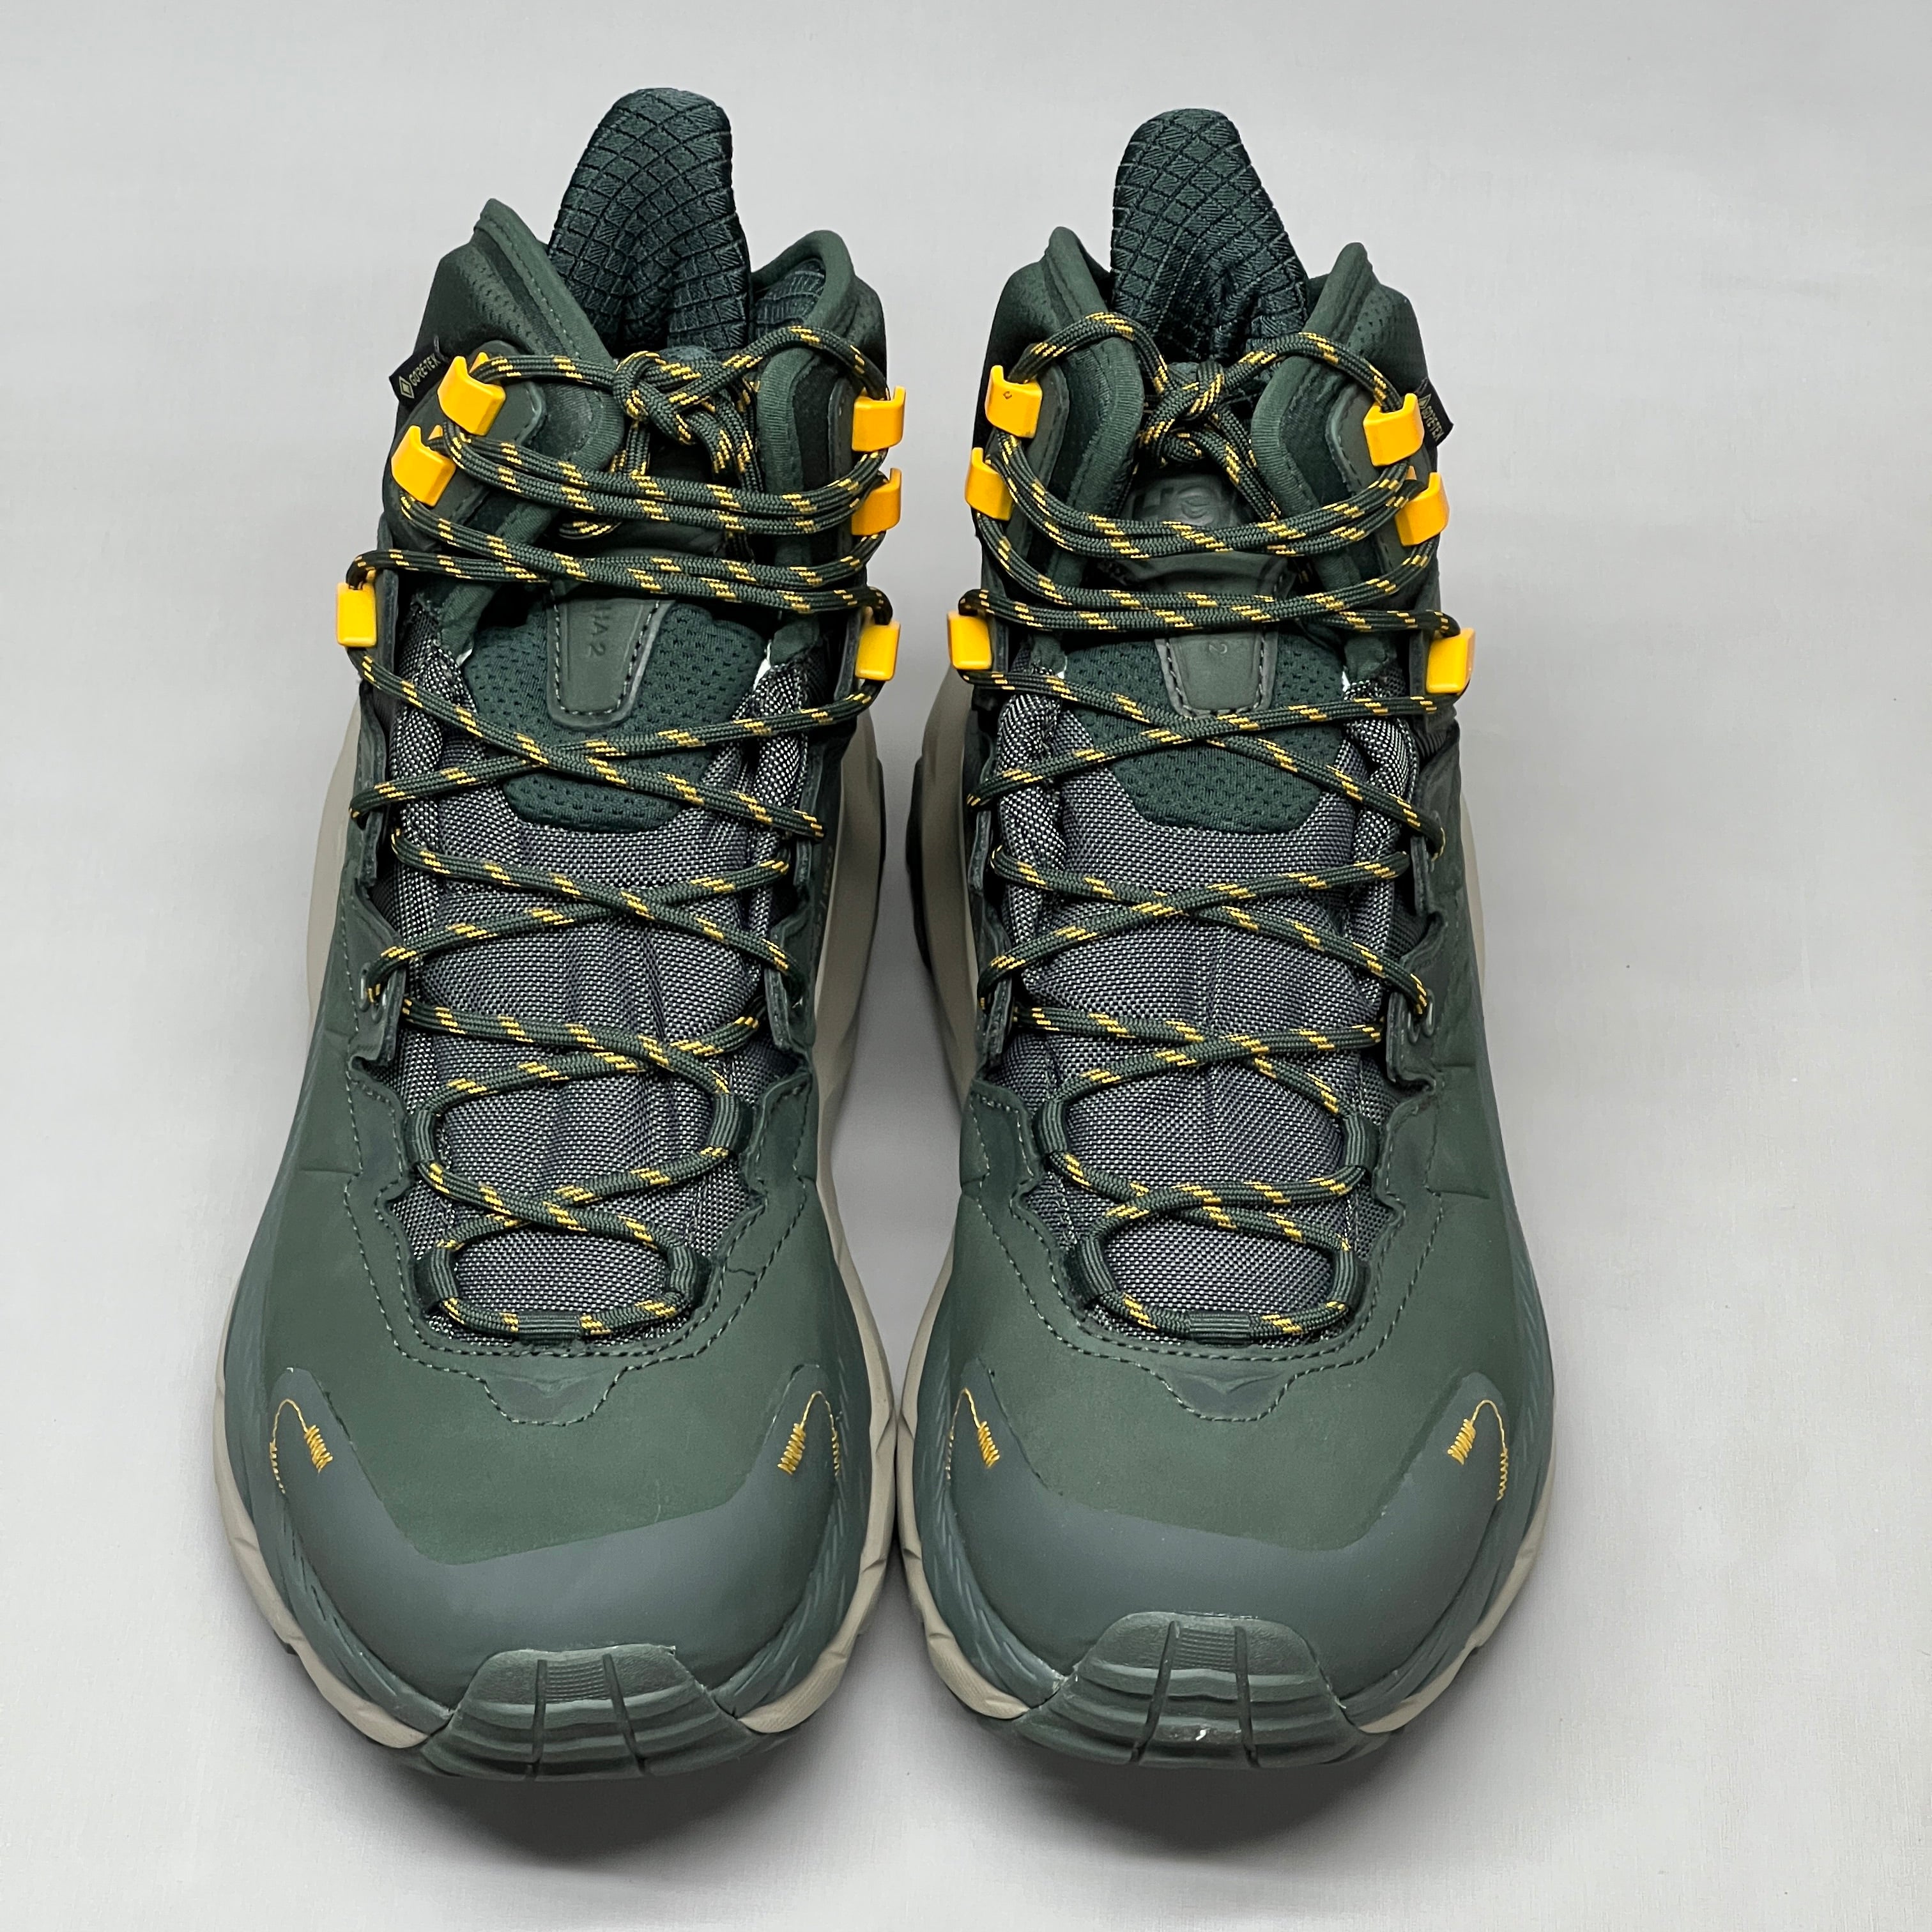 HOKA Kaha 2 GTX Shoe Men's Size 10.5D 1123155 DBRYL(New) – PayWut